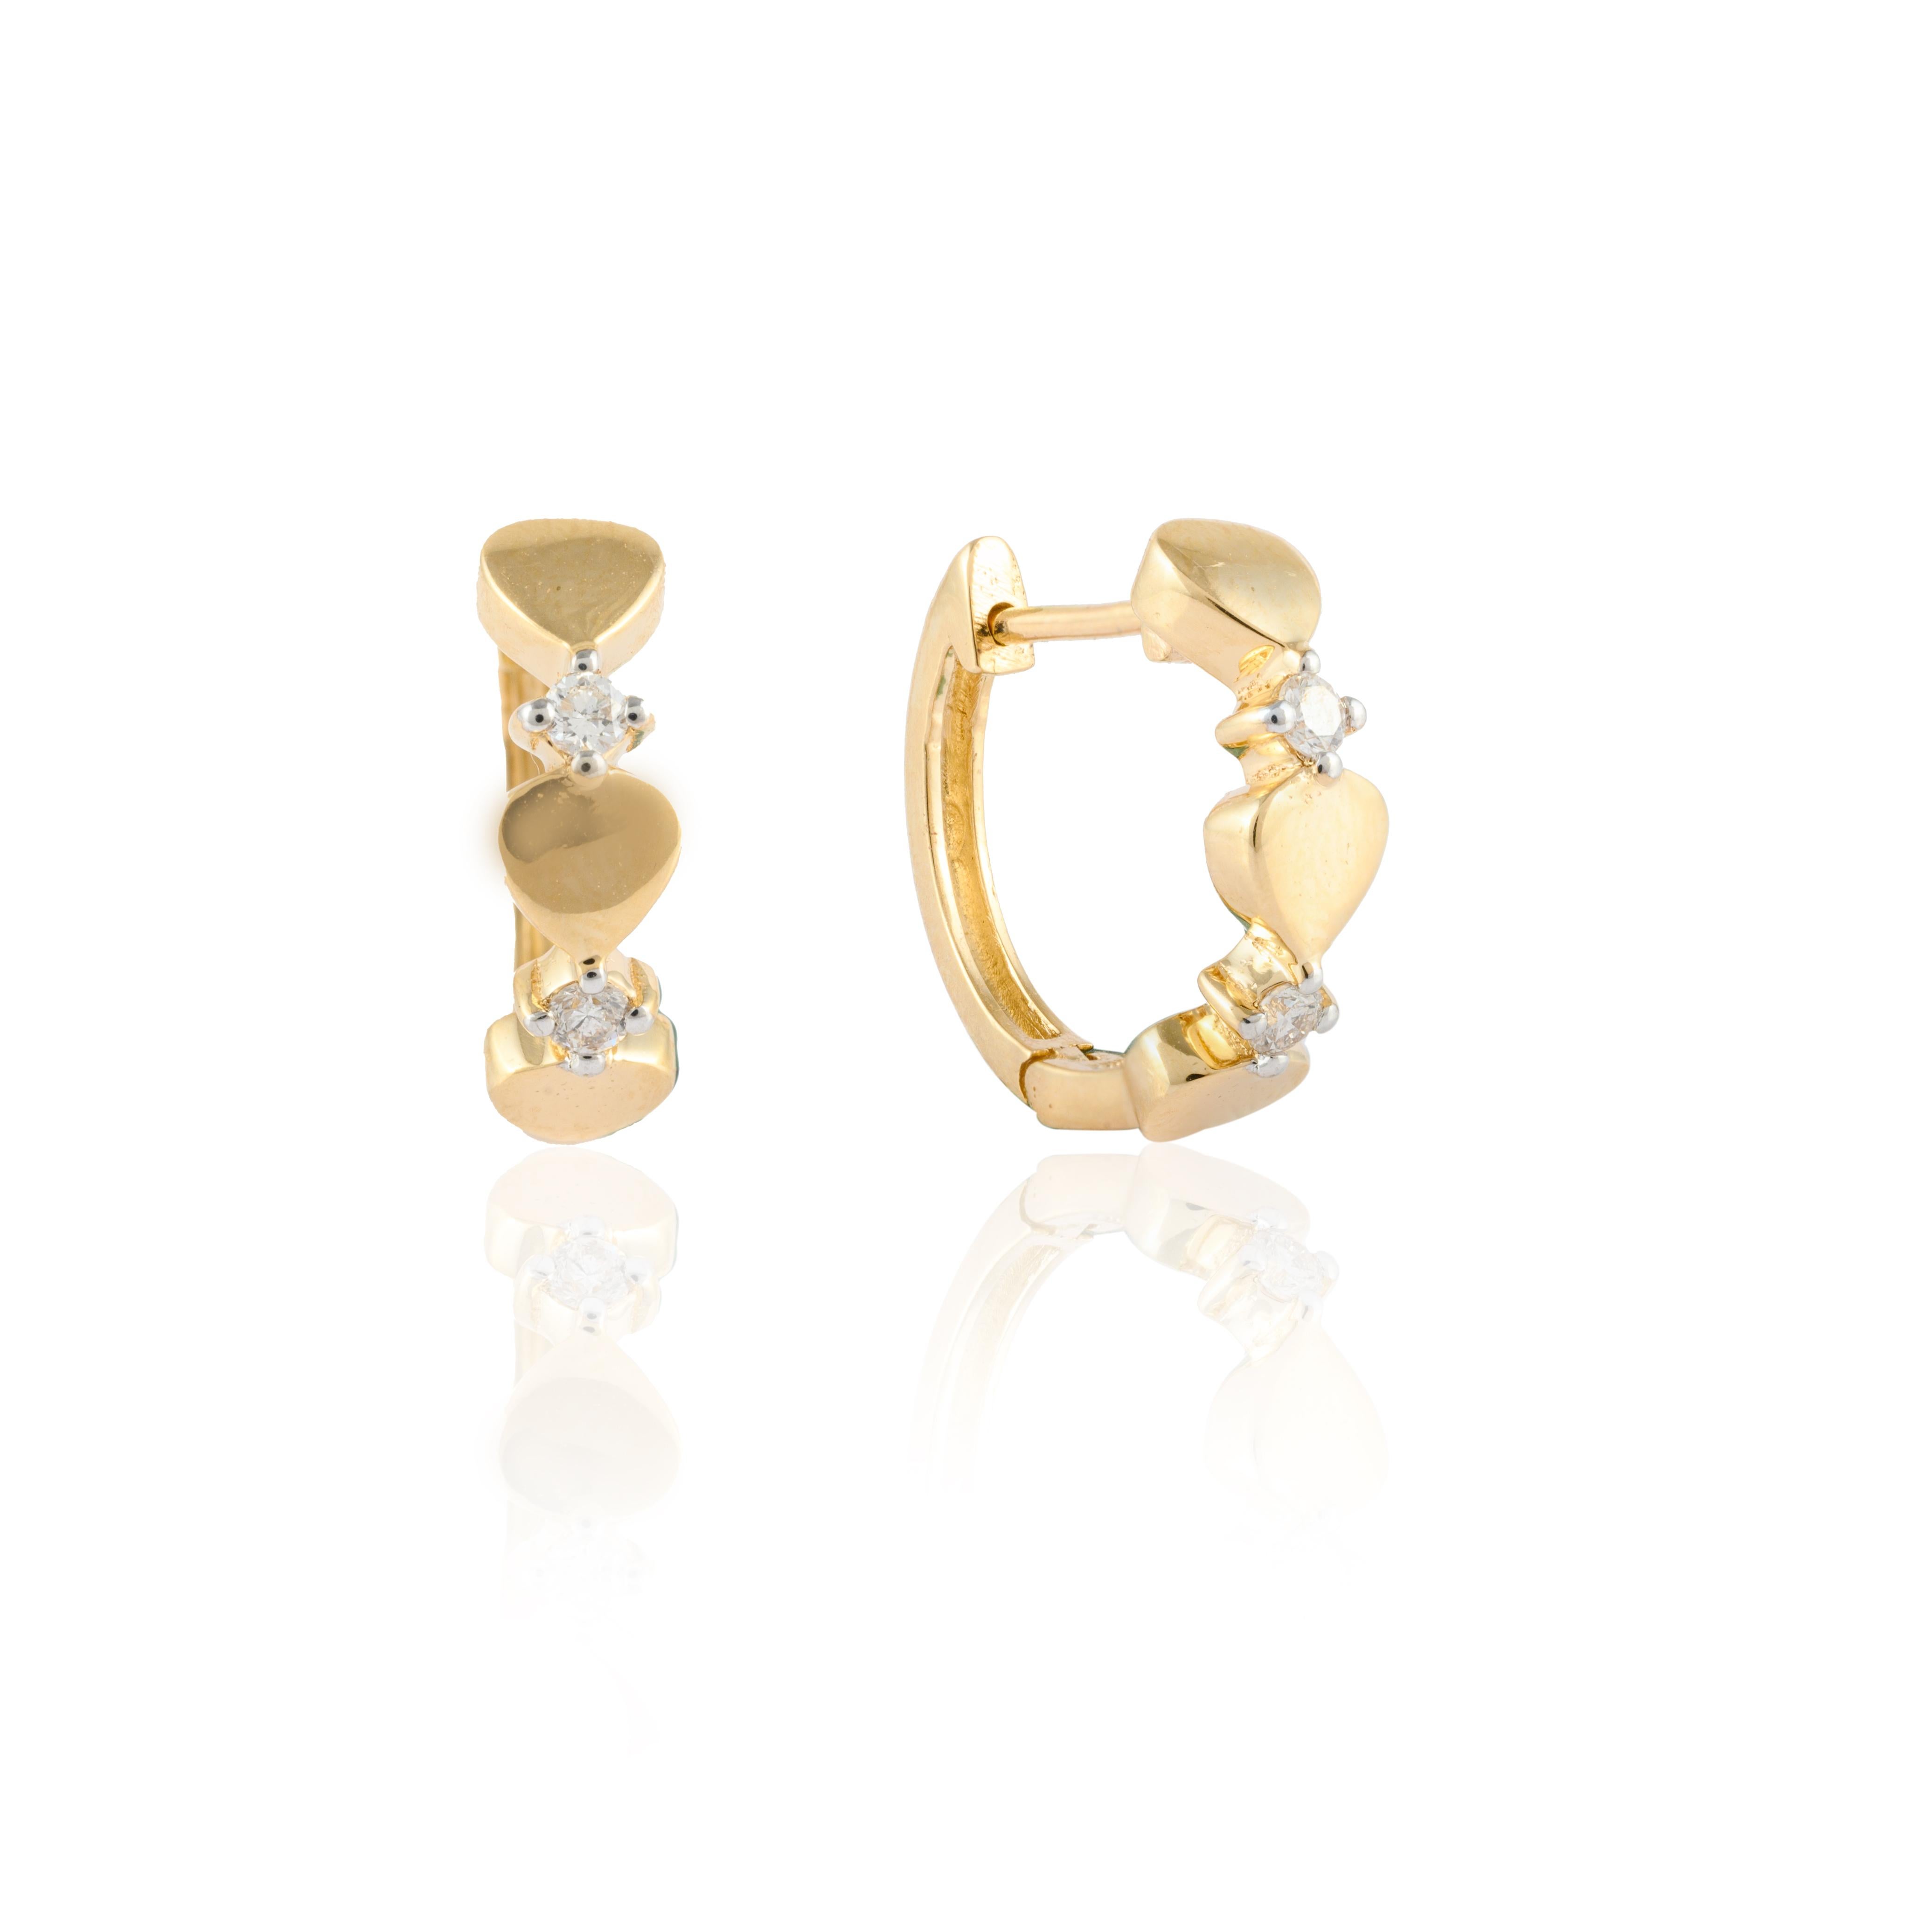 Modern Dainty Love Heart Diamond Huggie Hoop Earrings in 14Karat Solid Yellow Gold For Sale